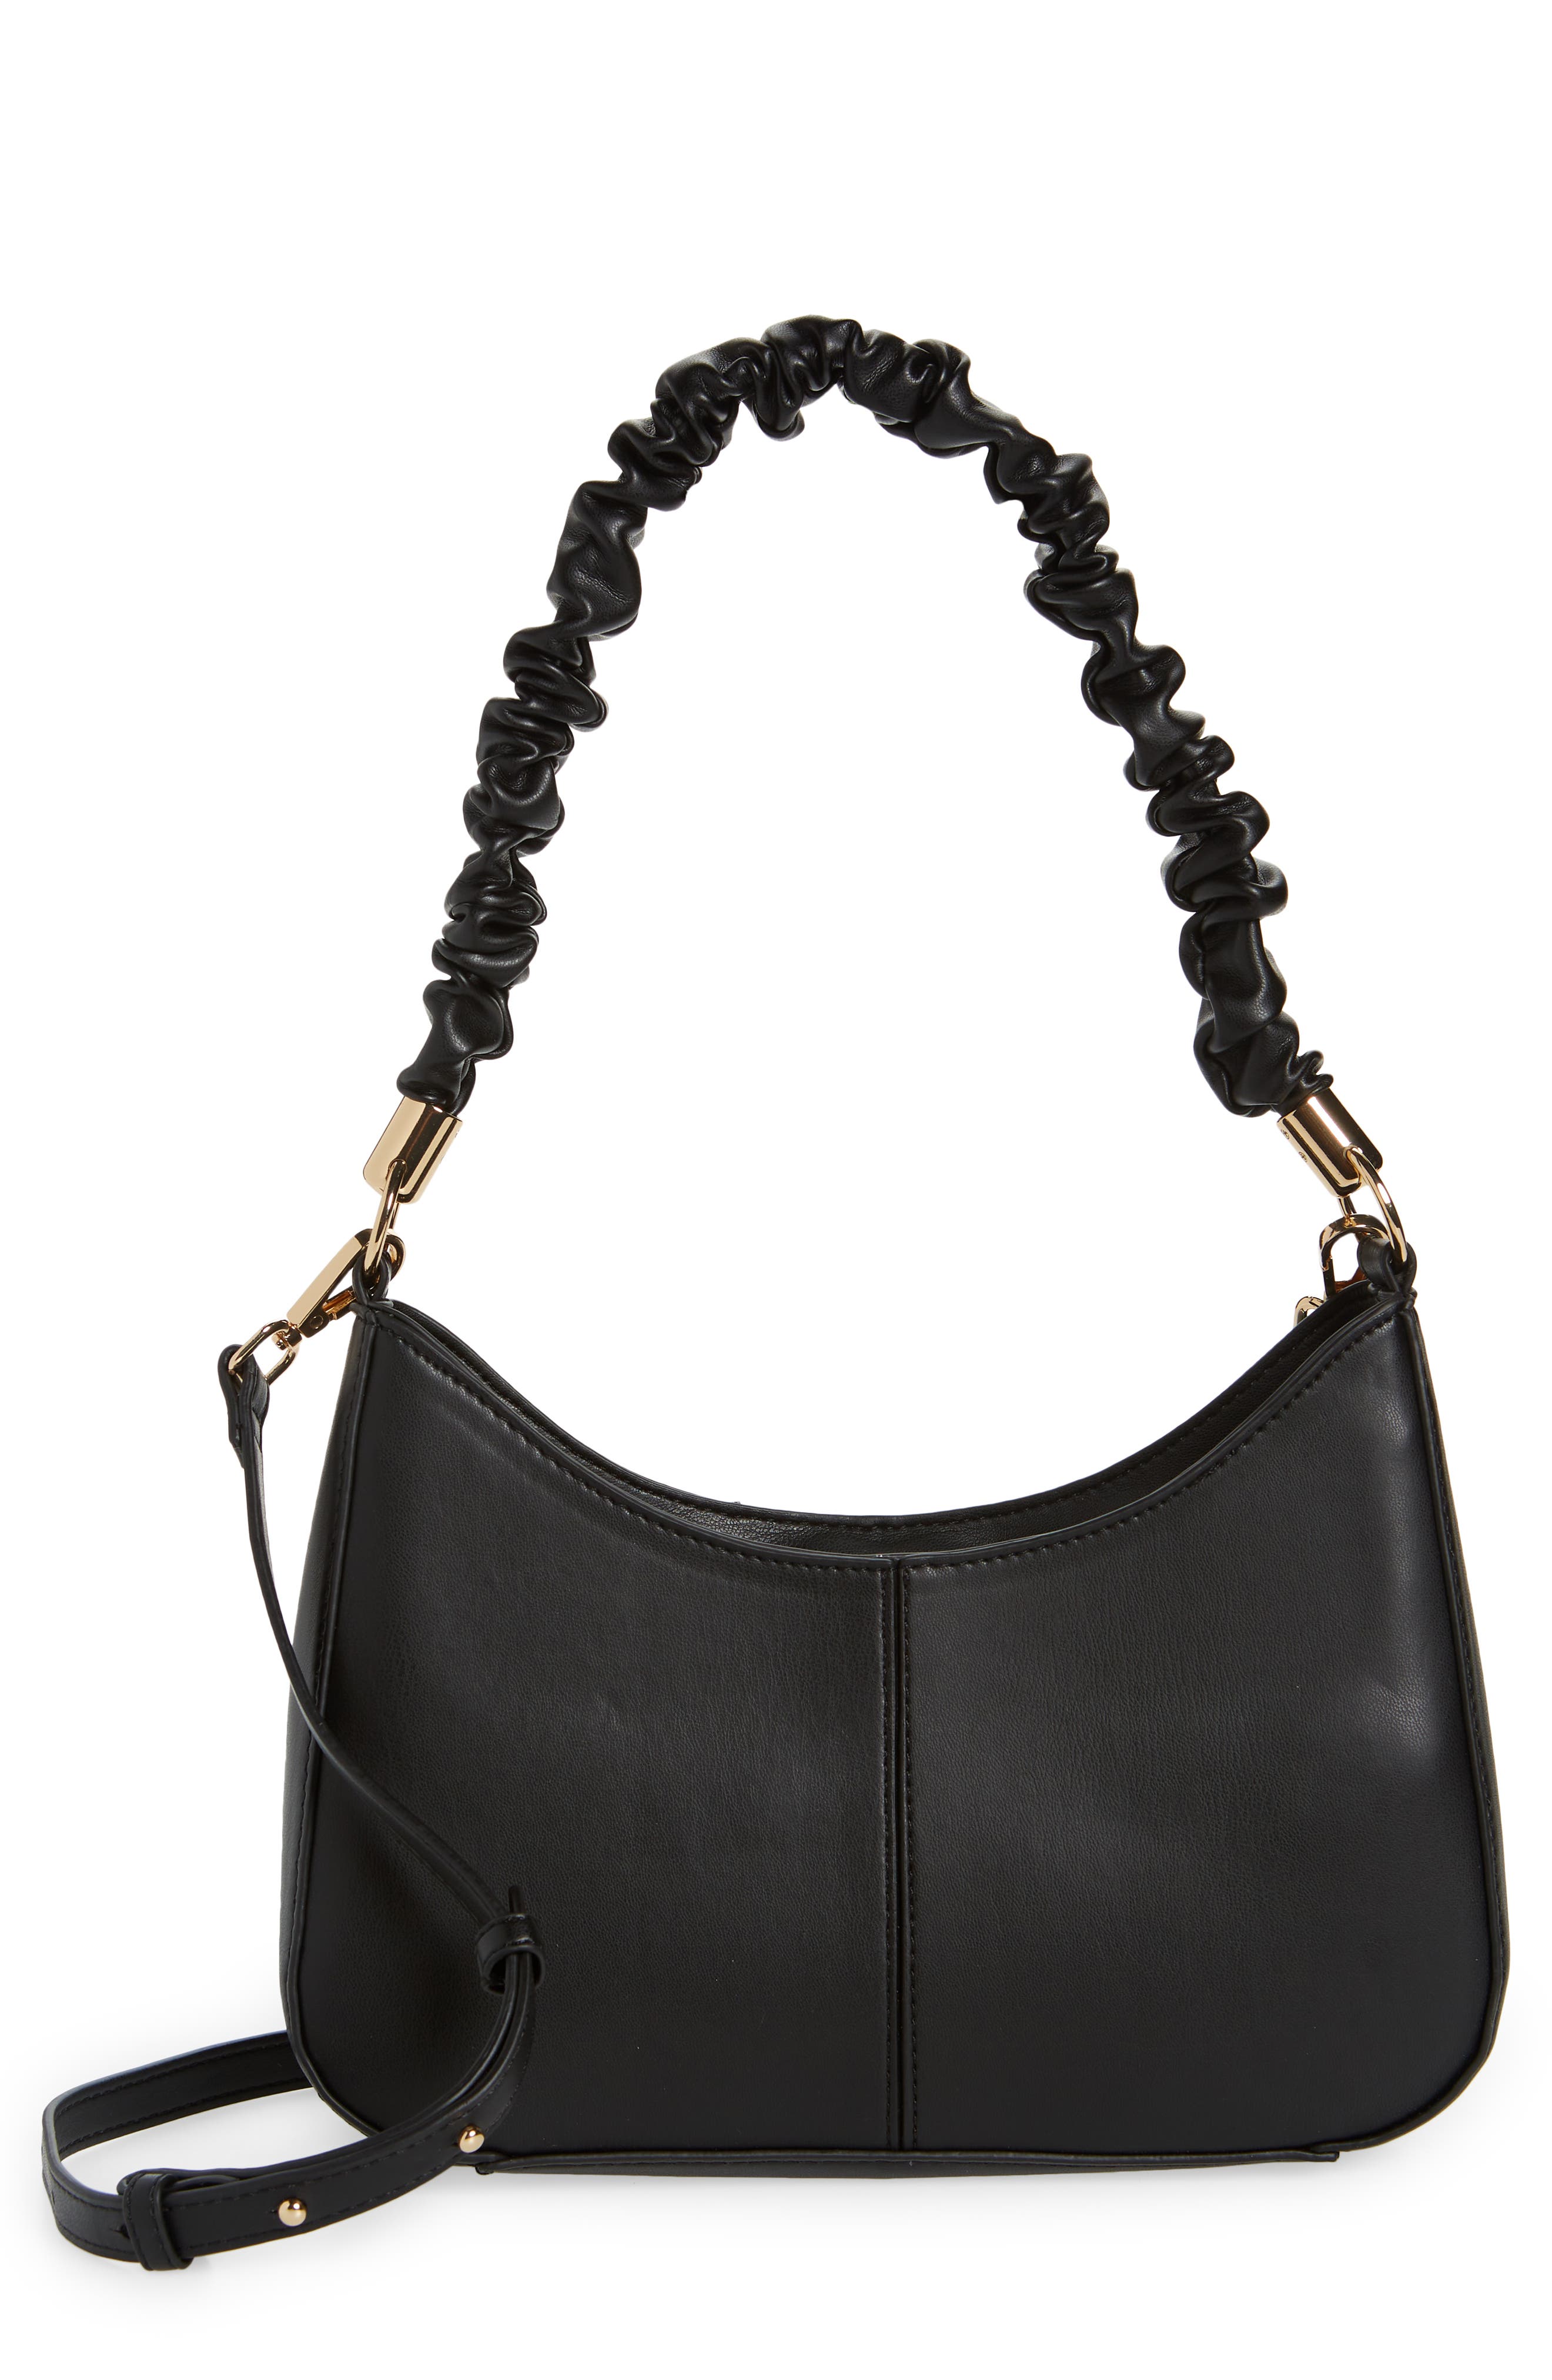 Bag Shoulder Purse Women Handbag Tote Leather Messenger Satchel Bags New Faux Wo 